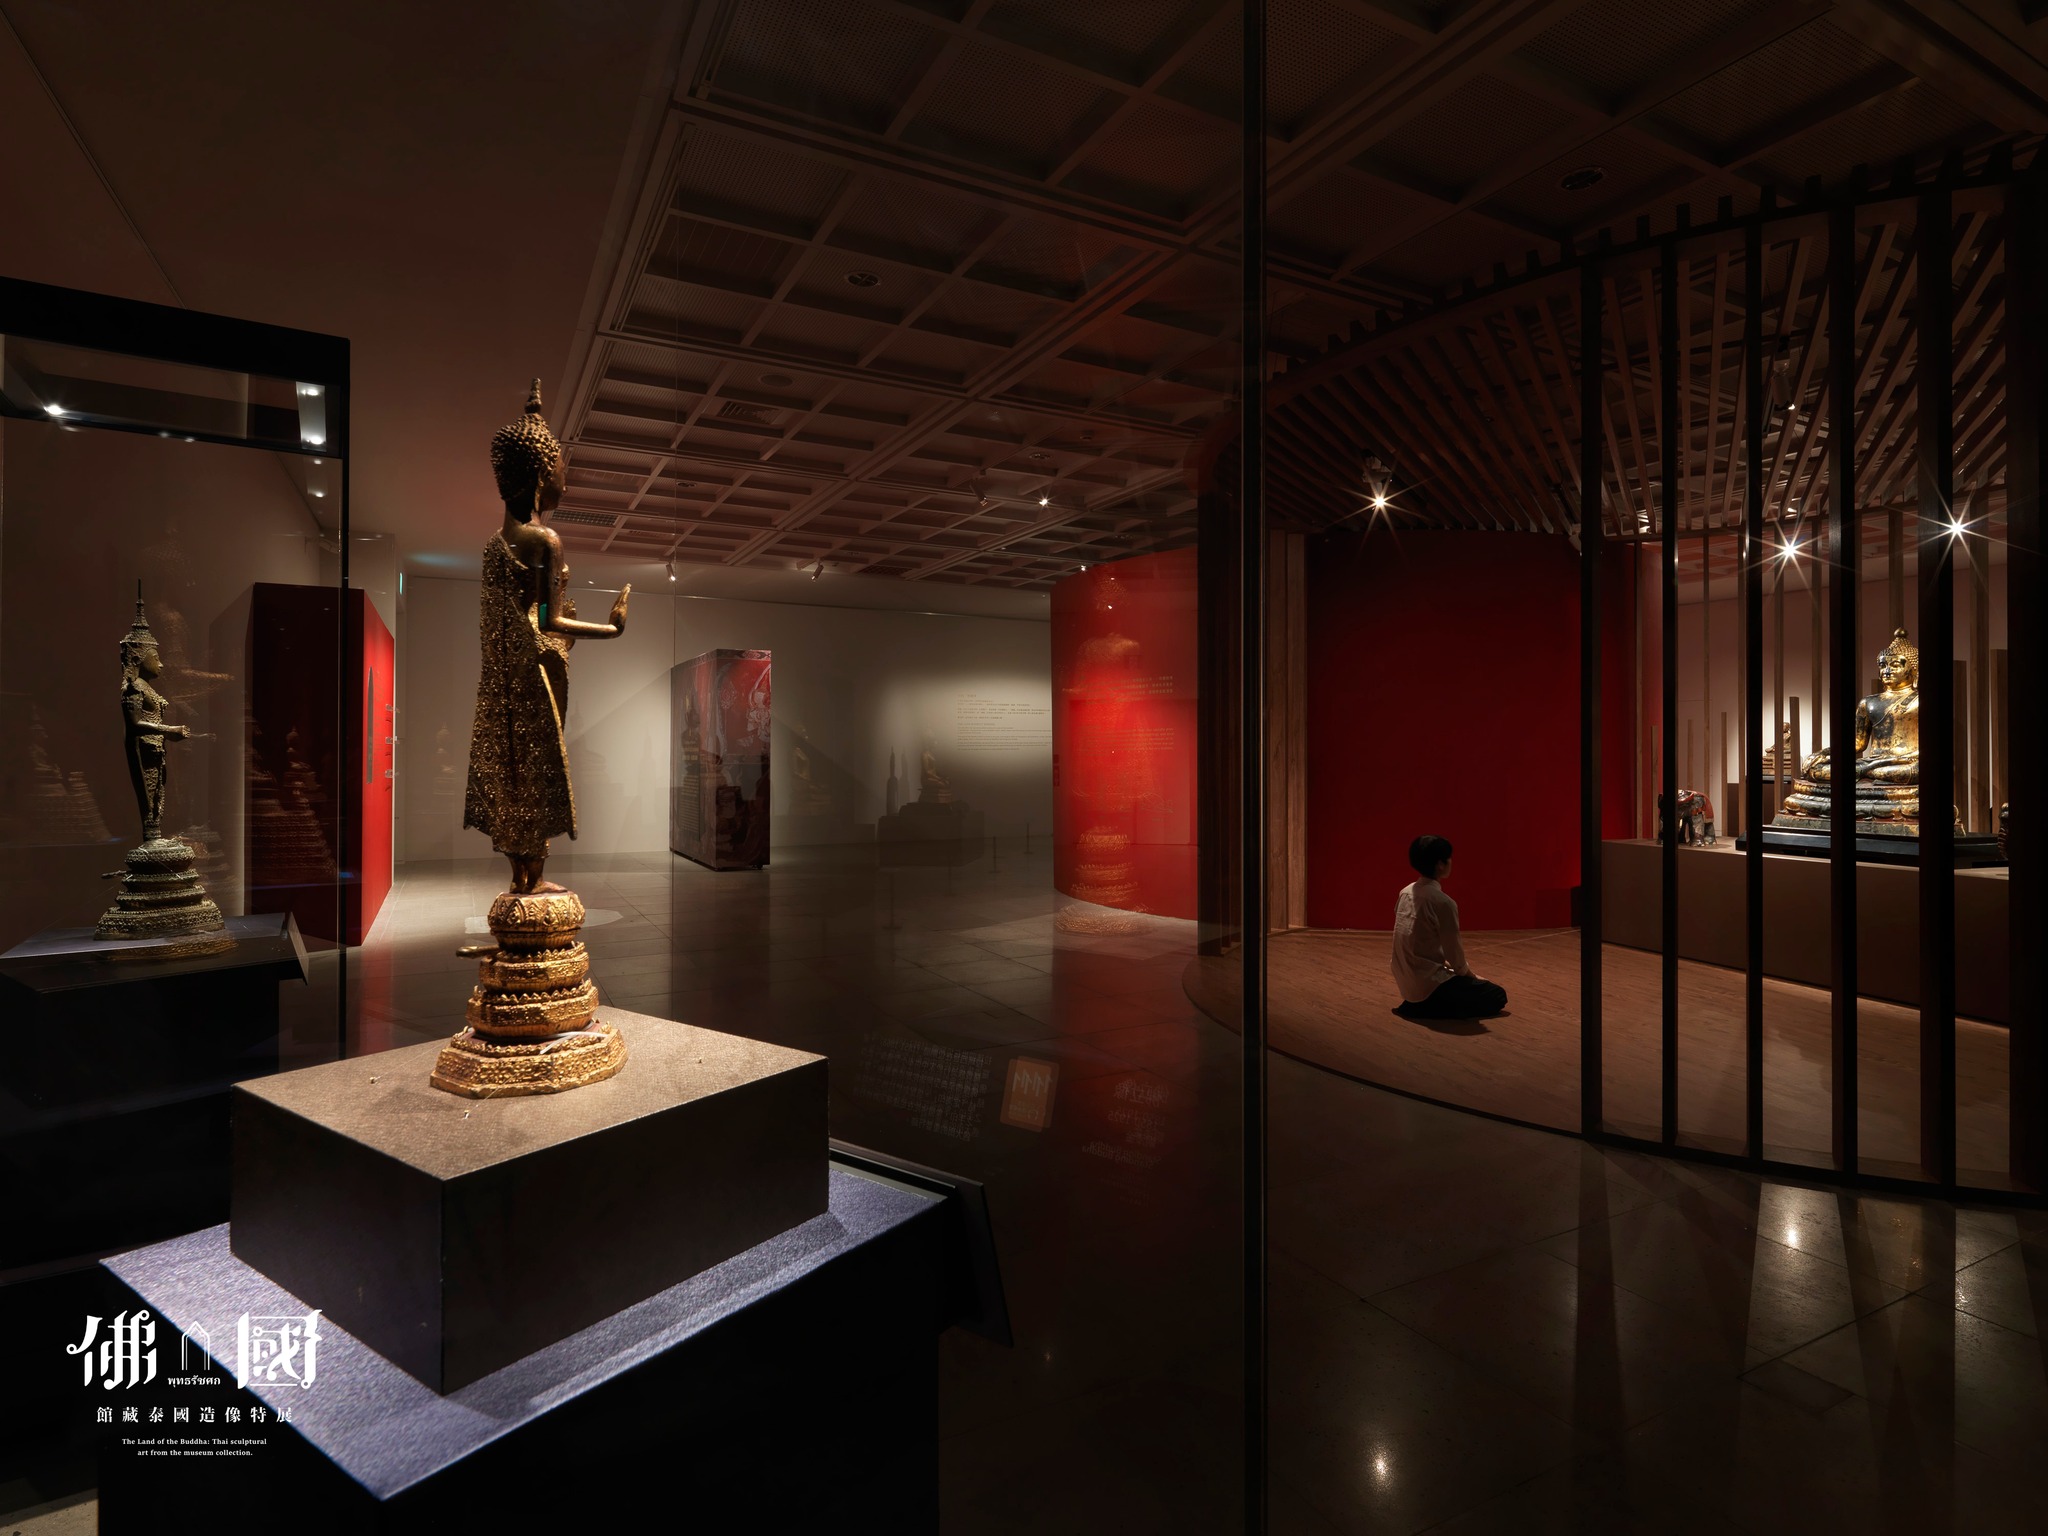 中台世界博物館泰國千年佛教藝術展 出示泰國護照可免費參觀